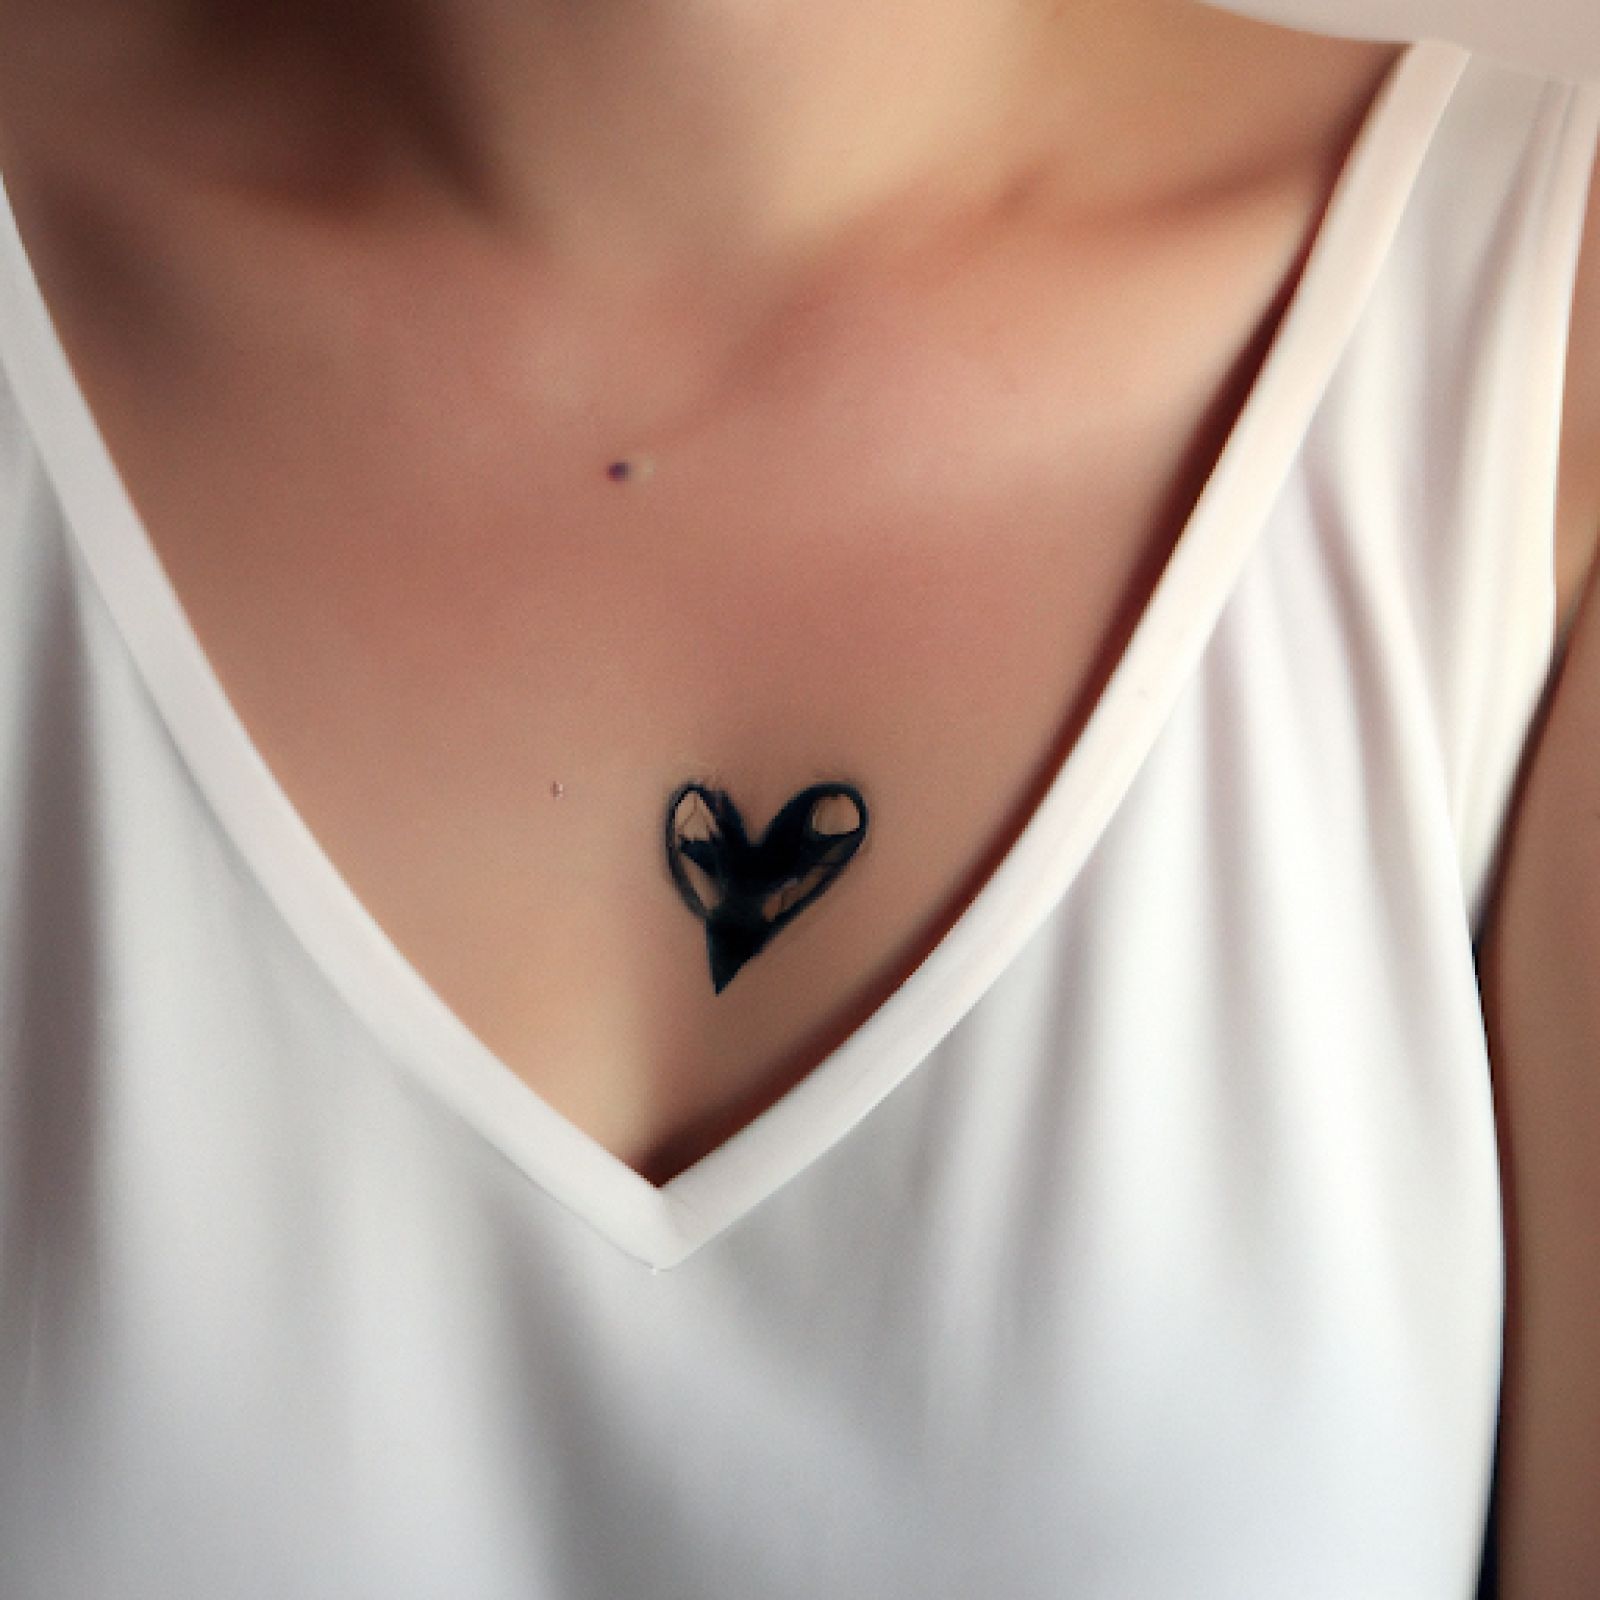 Broken heart tattoo on chest for women